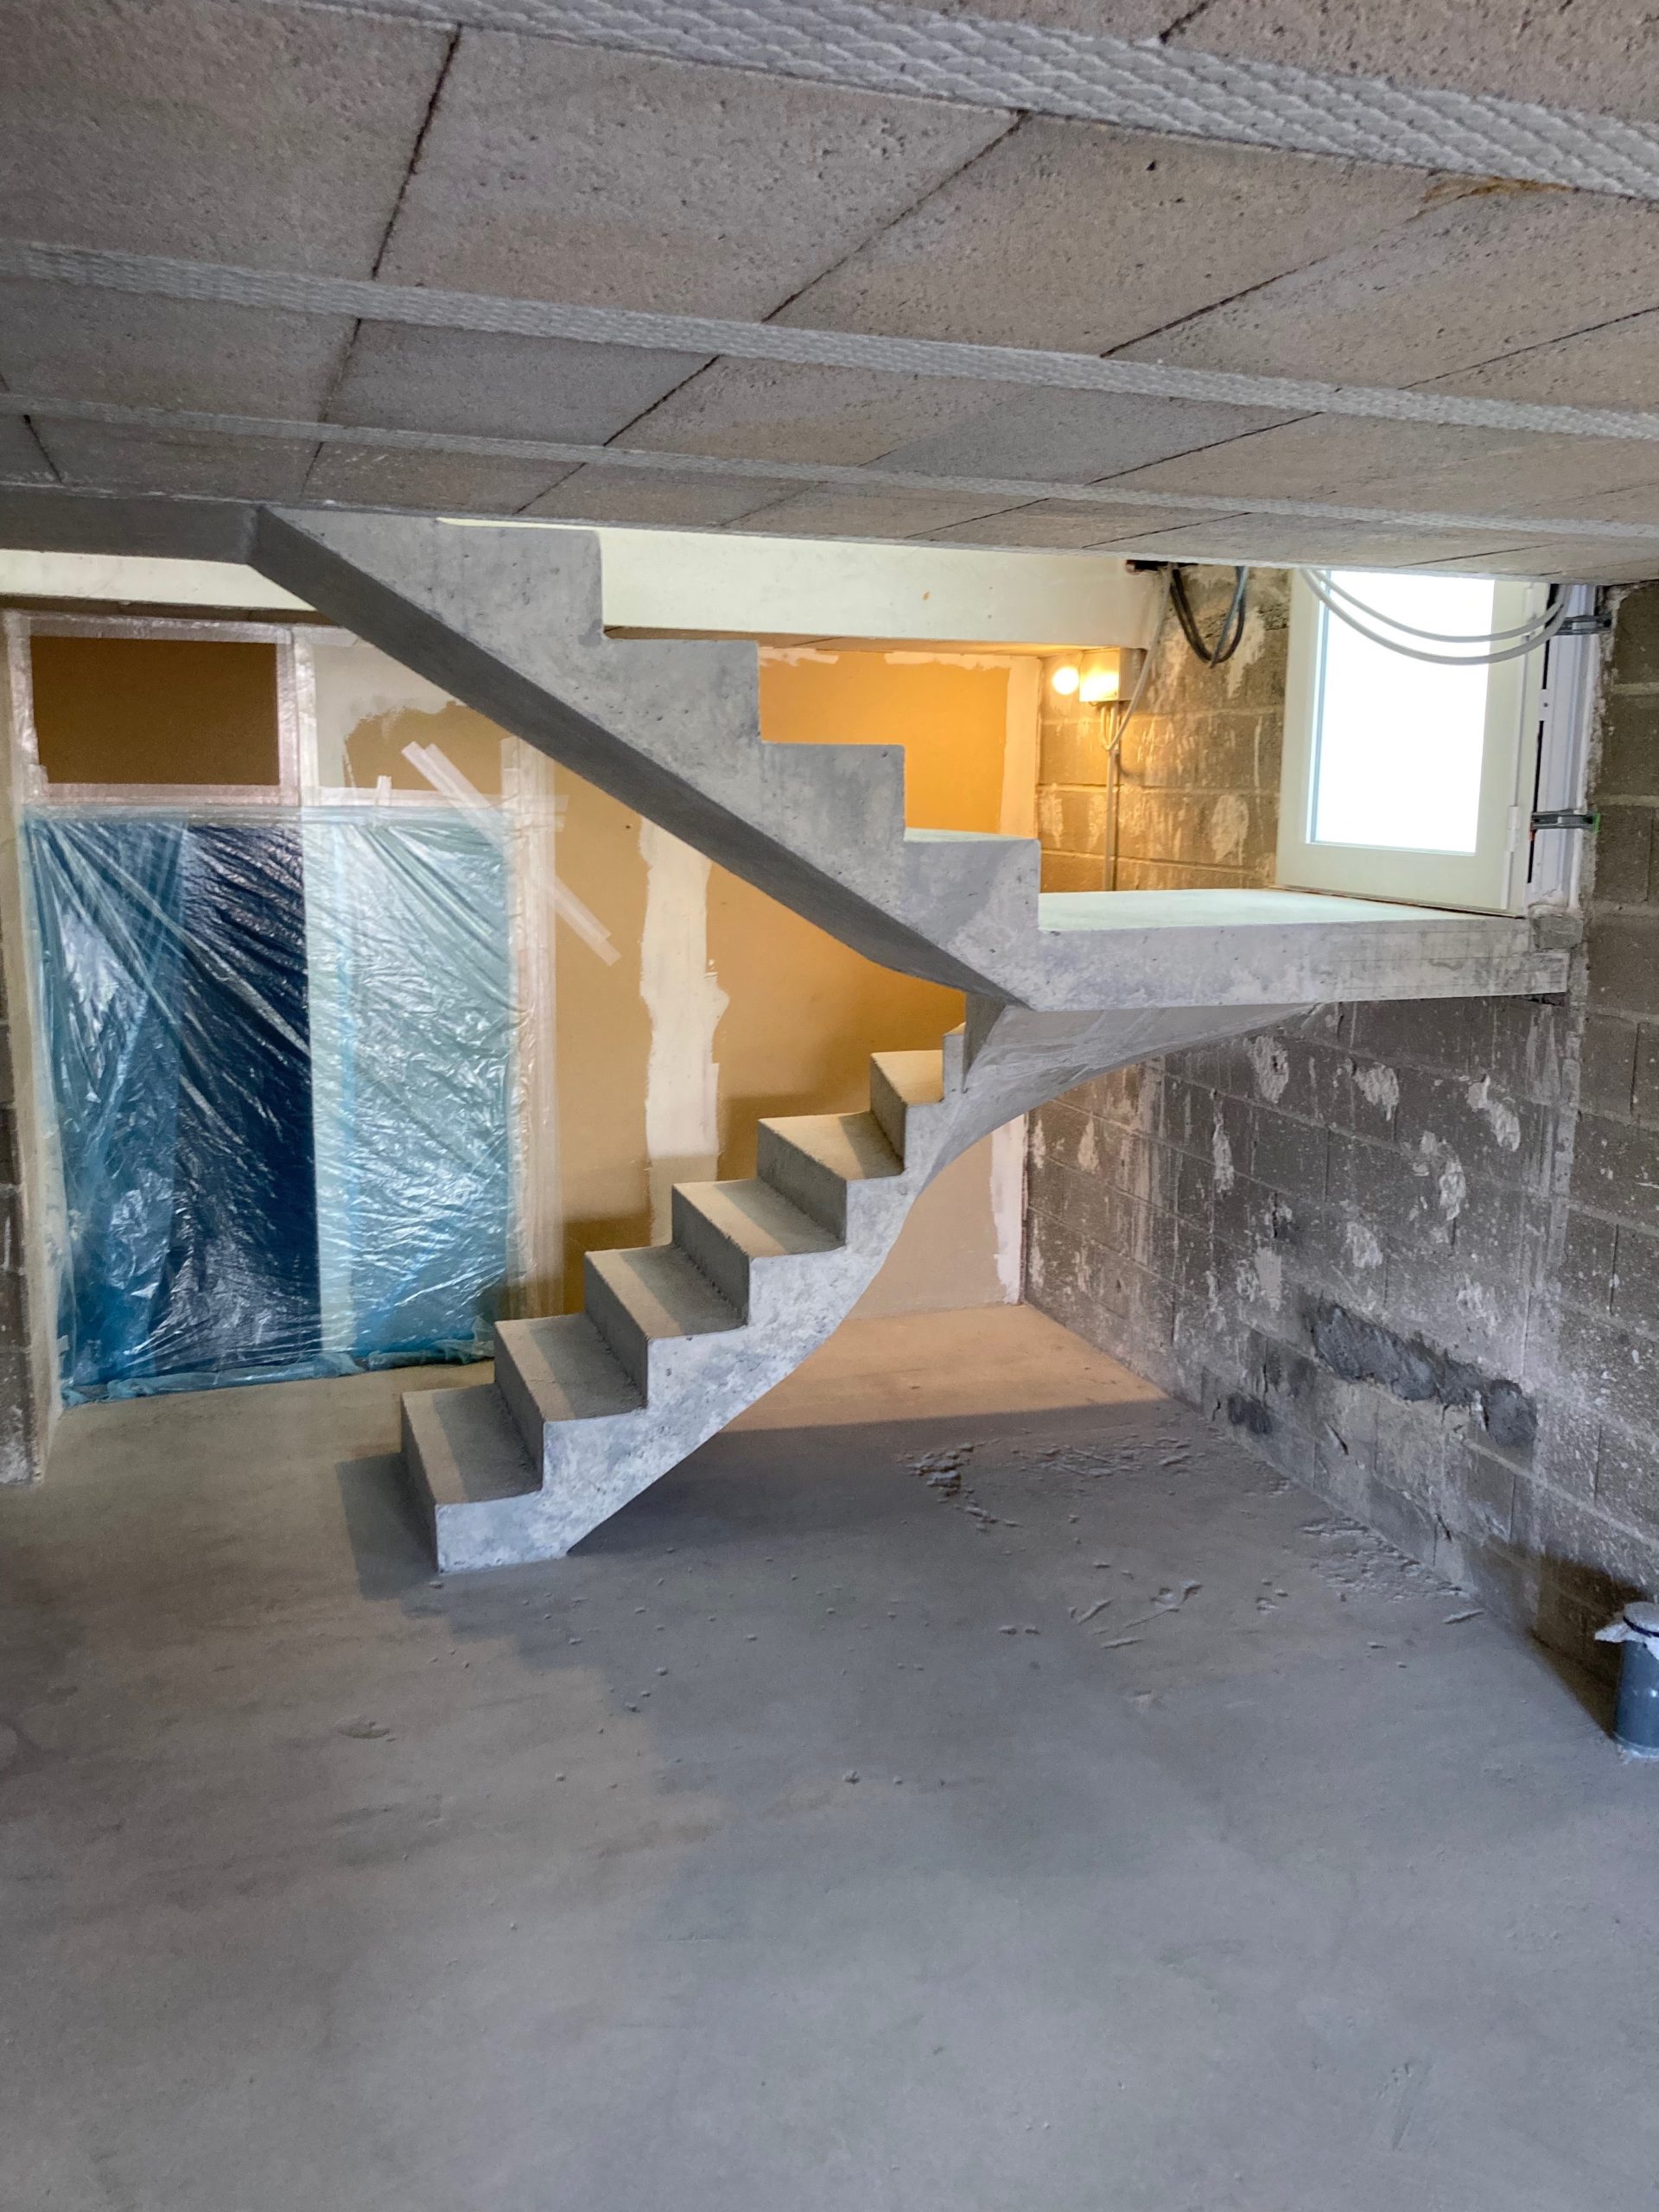 Structure en béton venant juste d'être décoffré, dont le temps de coffrage est de 1 jour et demi. Escalier à paillasse situé à Saint-Junien près de Limoges dans le département de la Haute-Vienne.